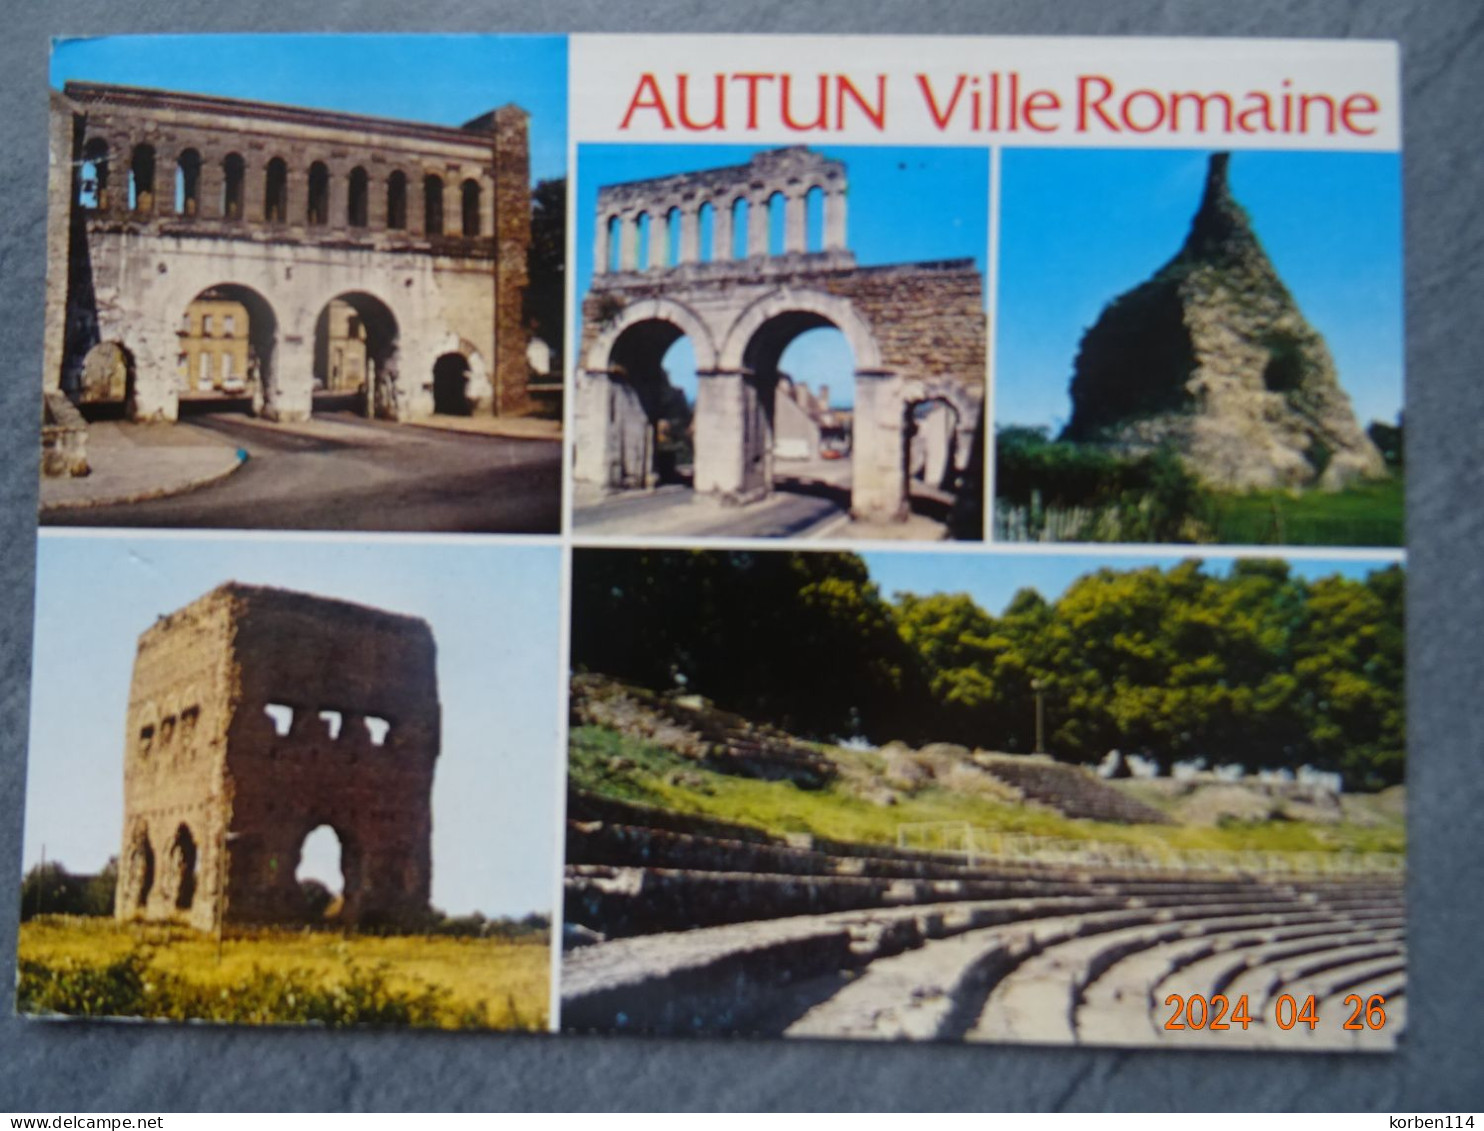 AUTUN VILLE ROMAINE - Autun